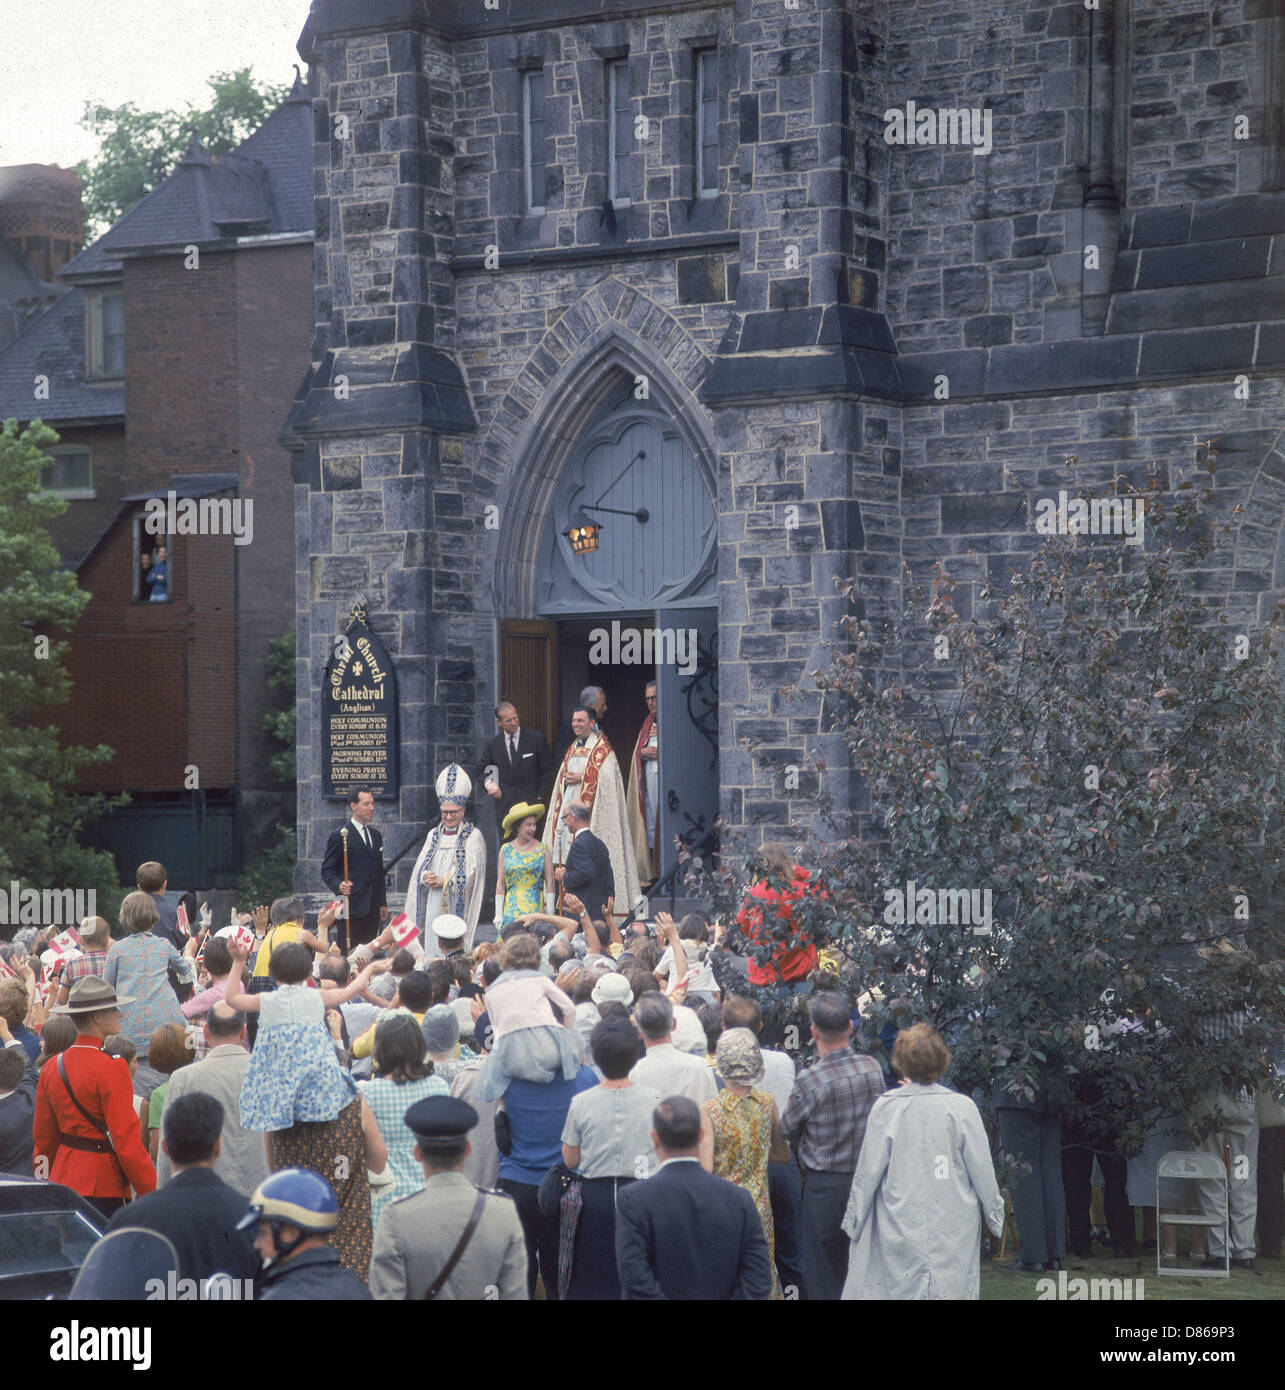 Queen Elizabeth II, tournée du Canada 1967 Banque D'Images